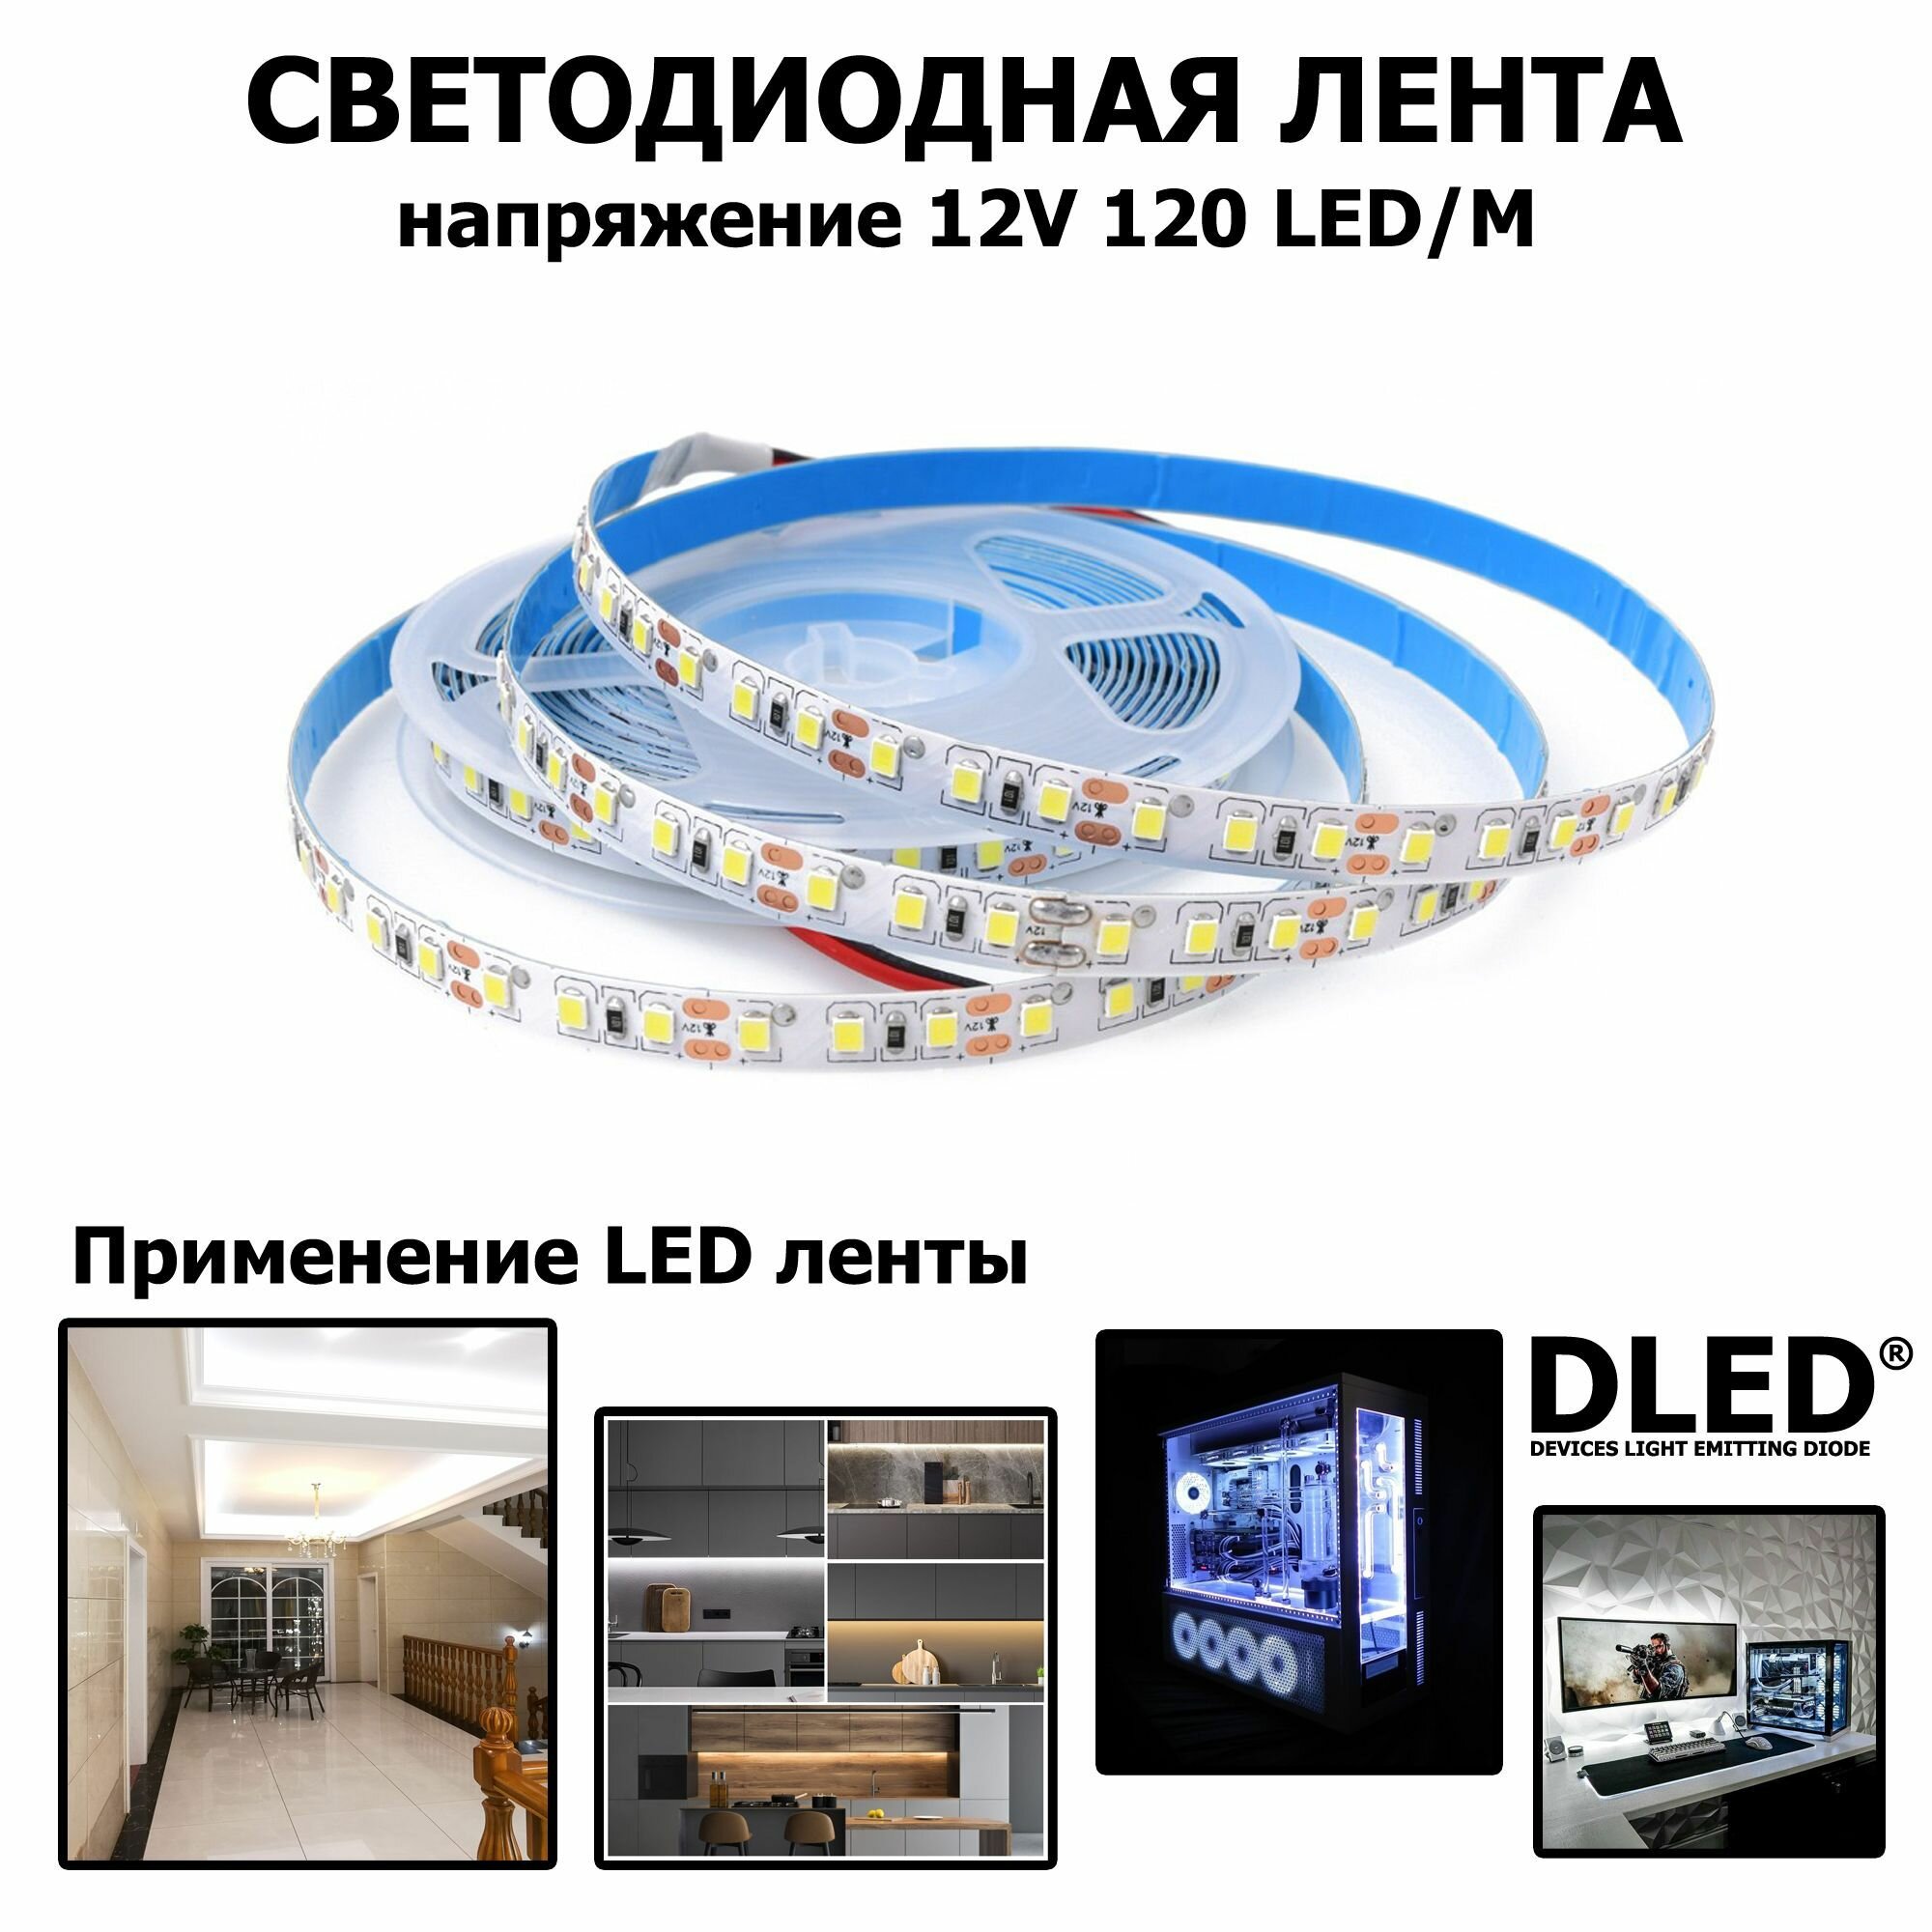 LED лента на SMD 2835 IP22 (120 LED) 12V DC 29W Белый 5500K 3 метра Бренд DLED